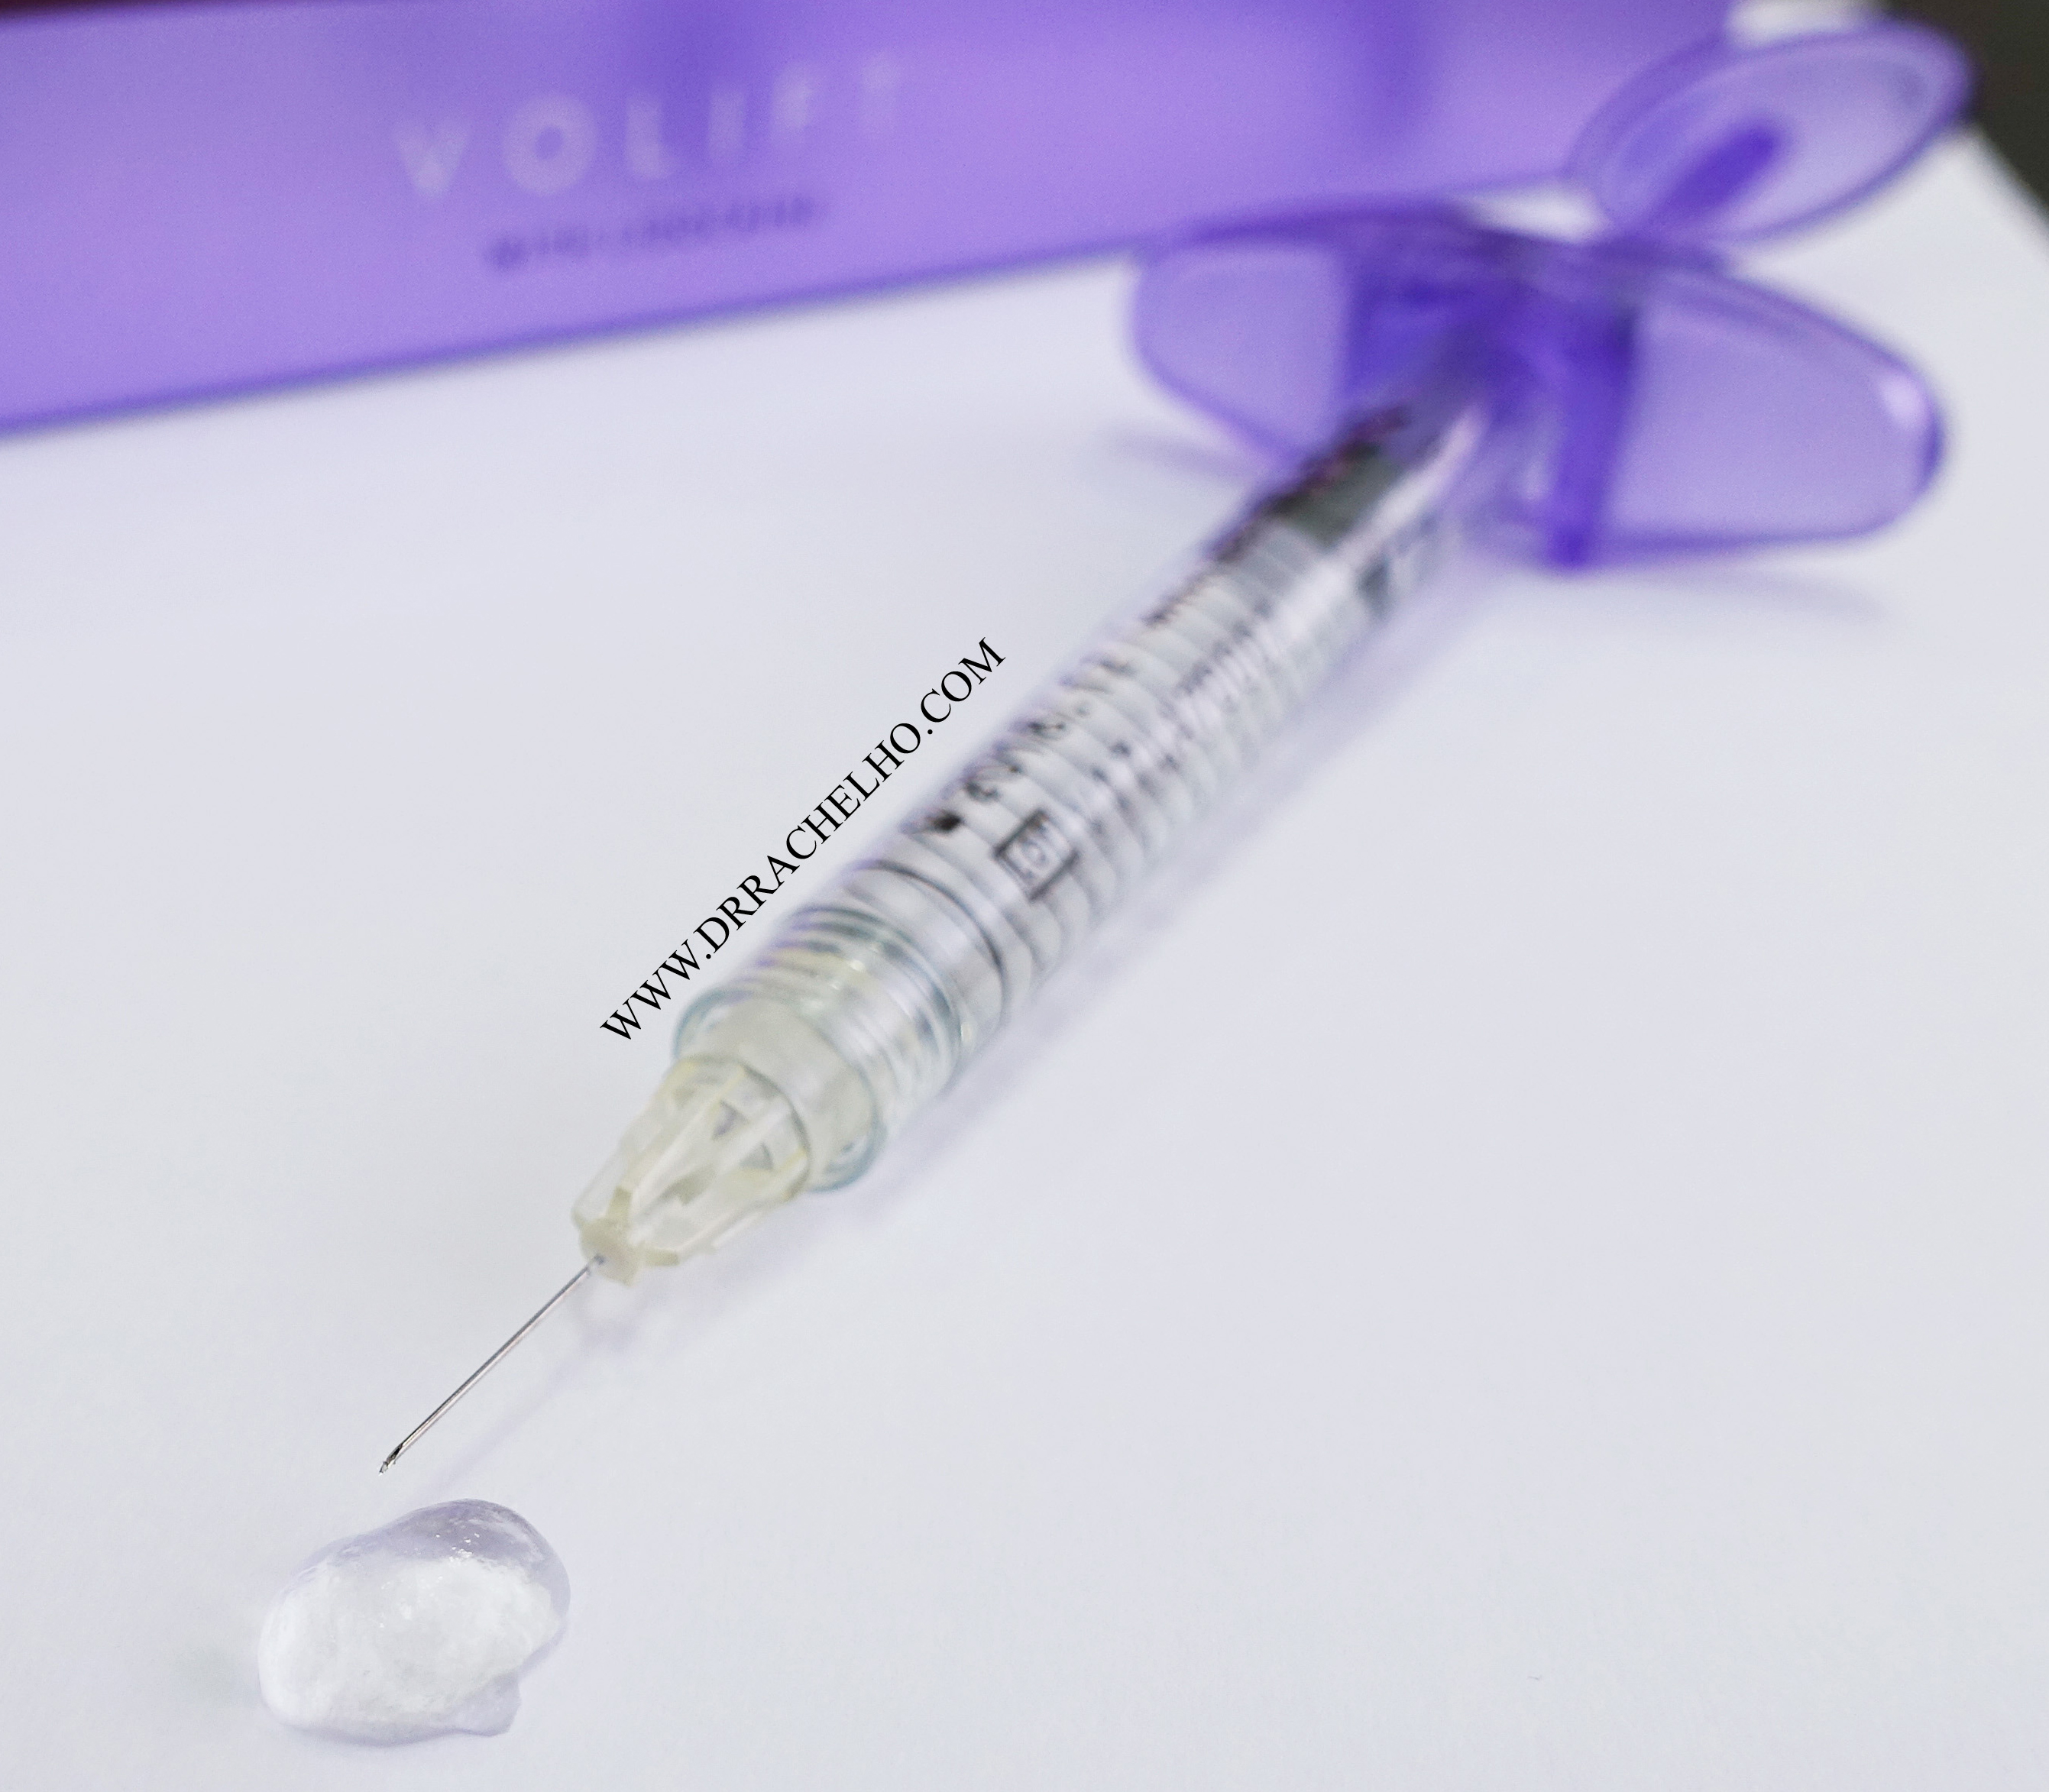 juvederm dermal filler syringe hyaluronic acid